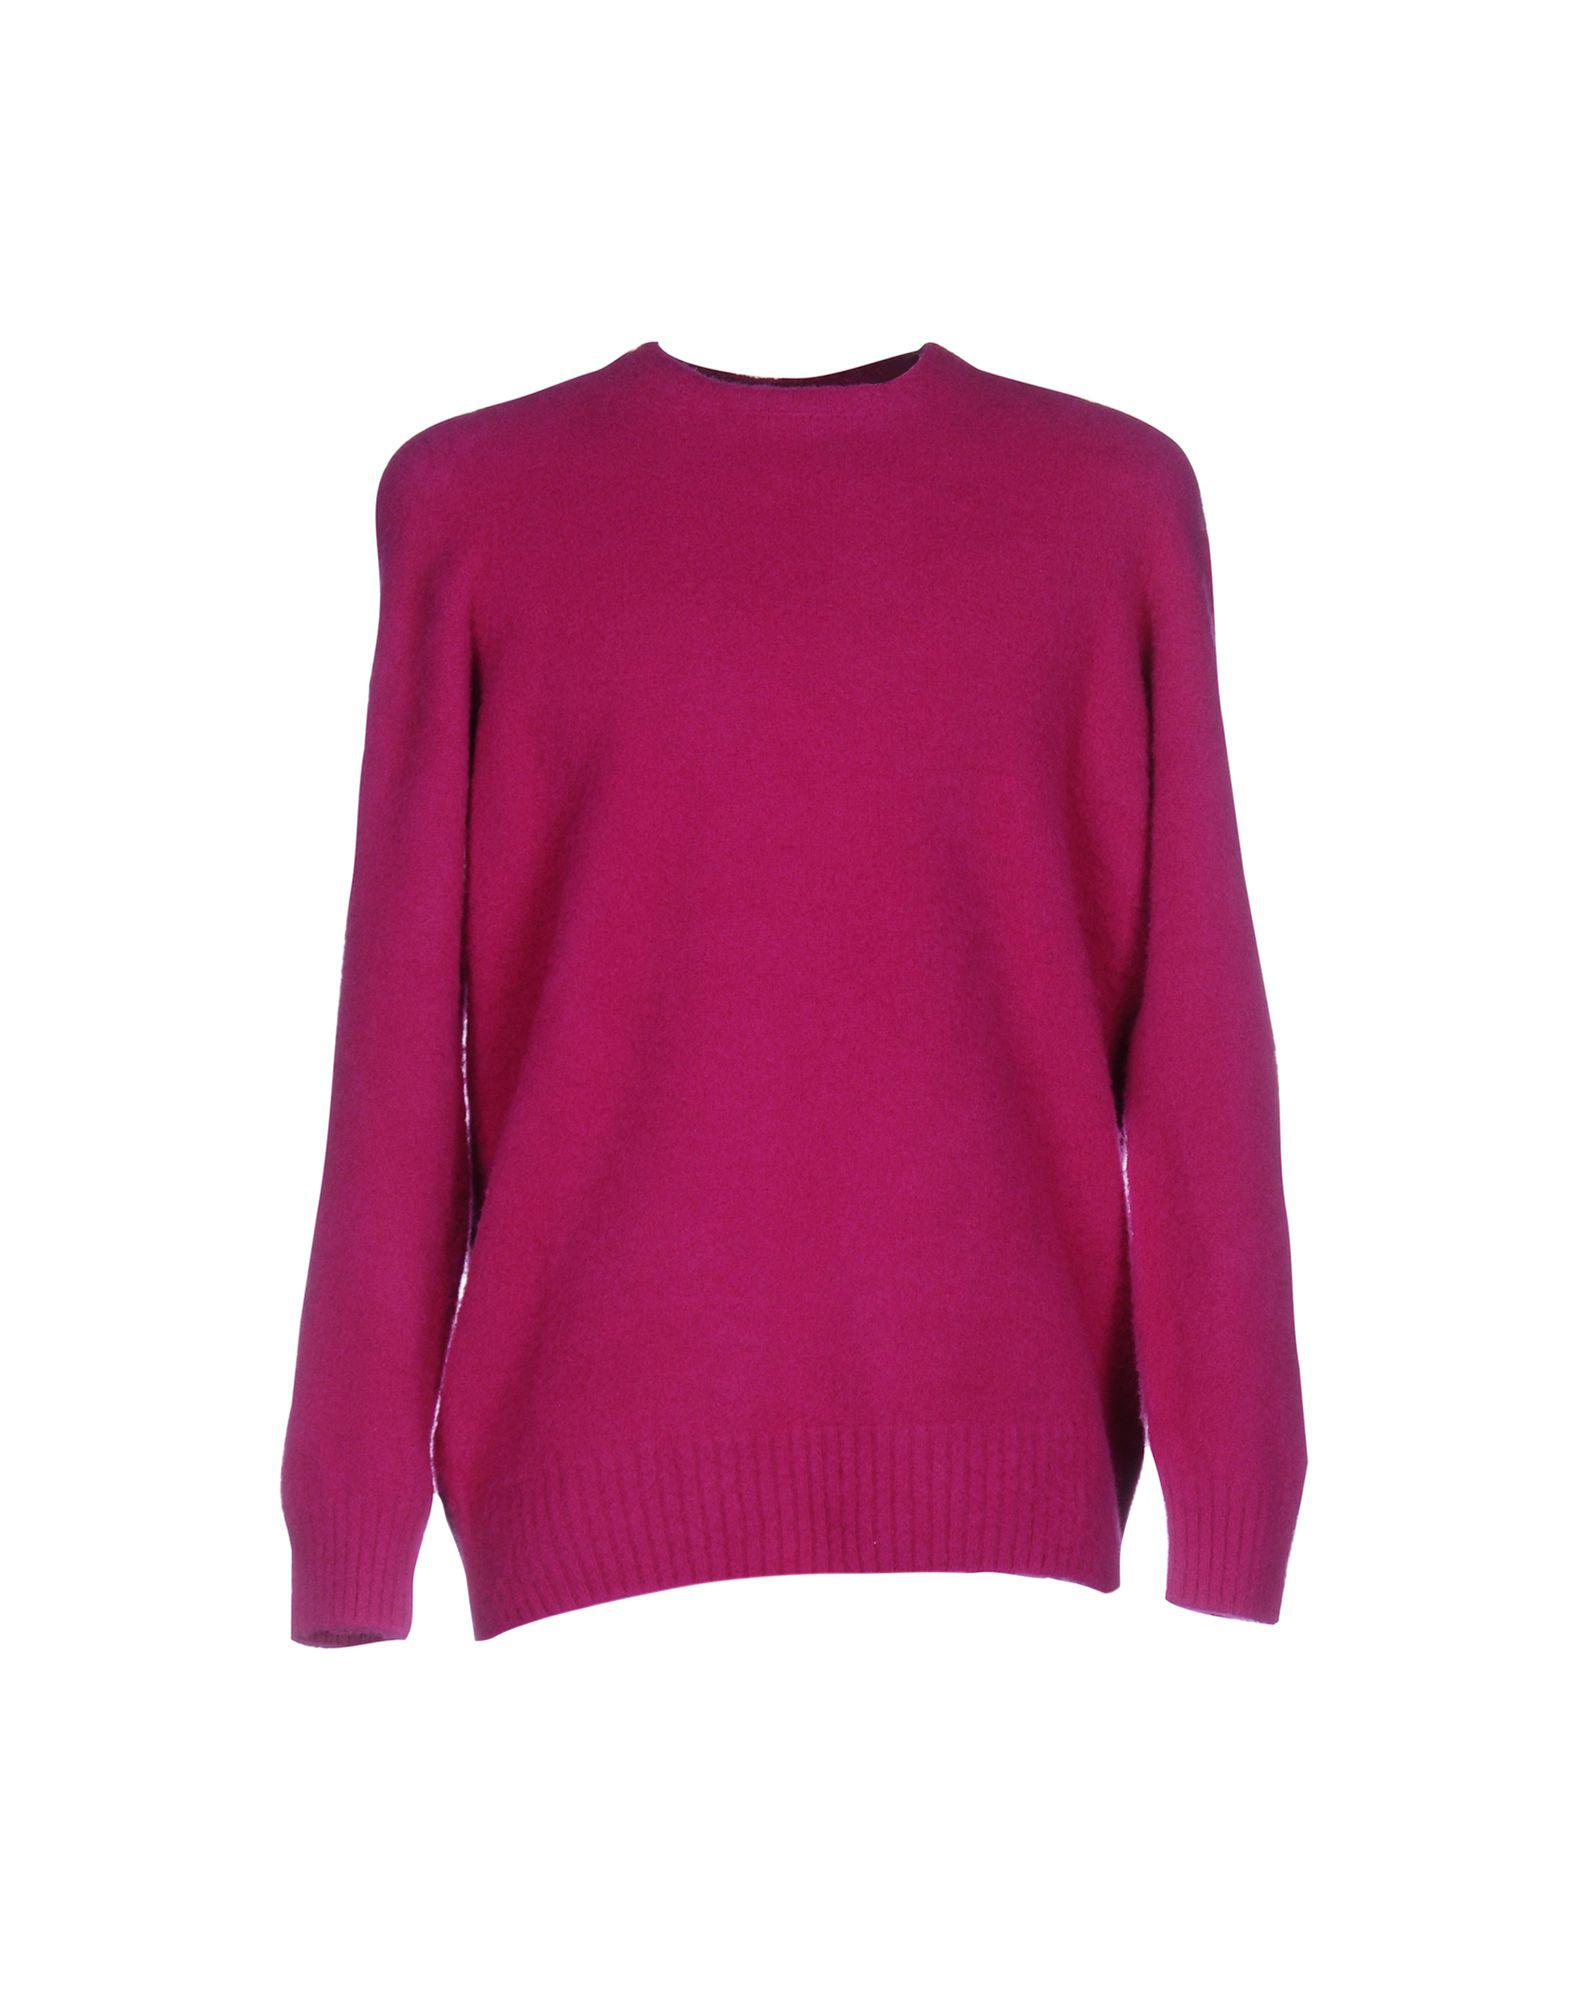 Drumohr Wool Sweater in Fuchsia (Purple) for Men - Lyst